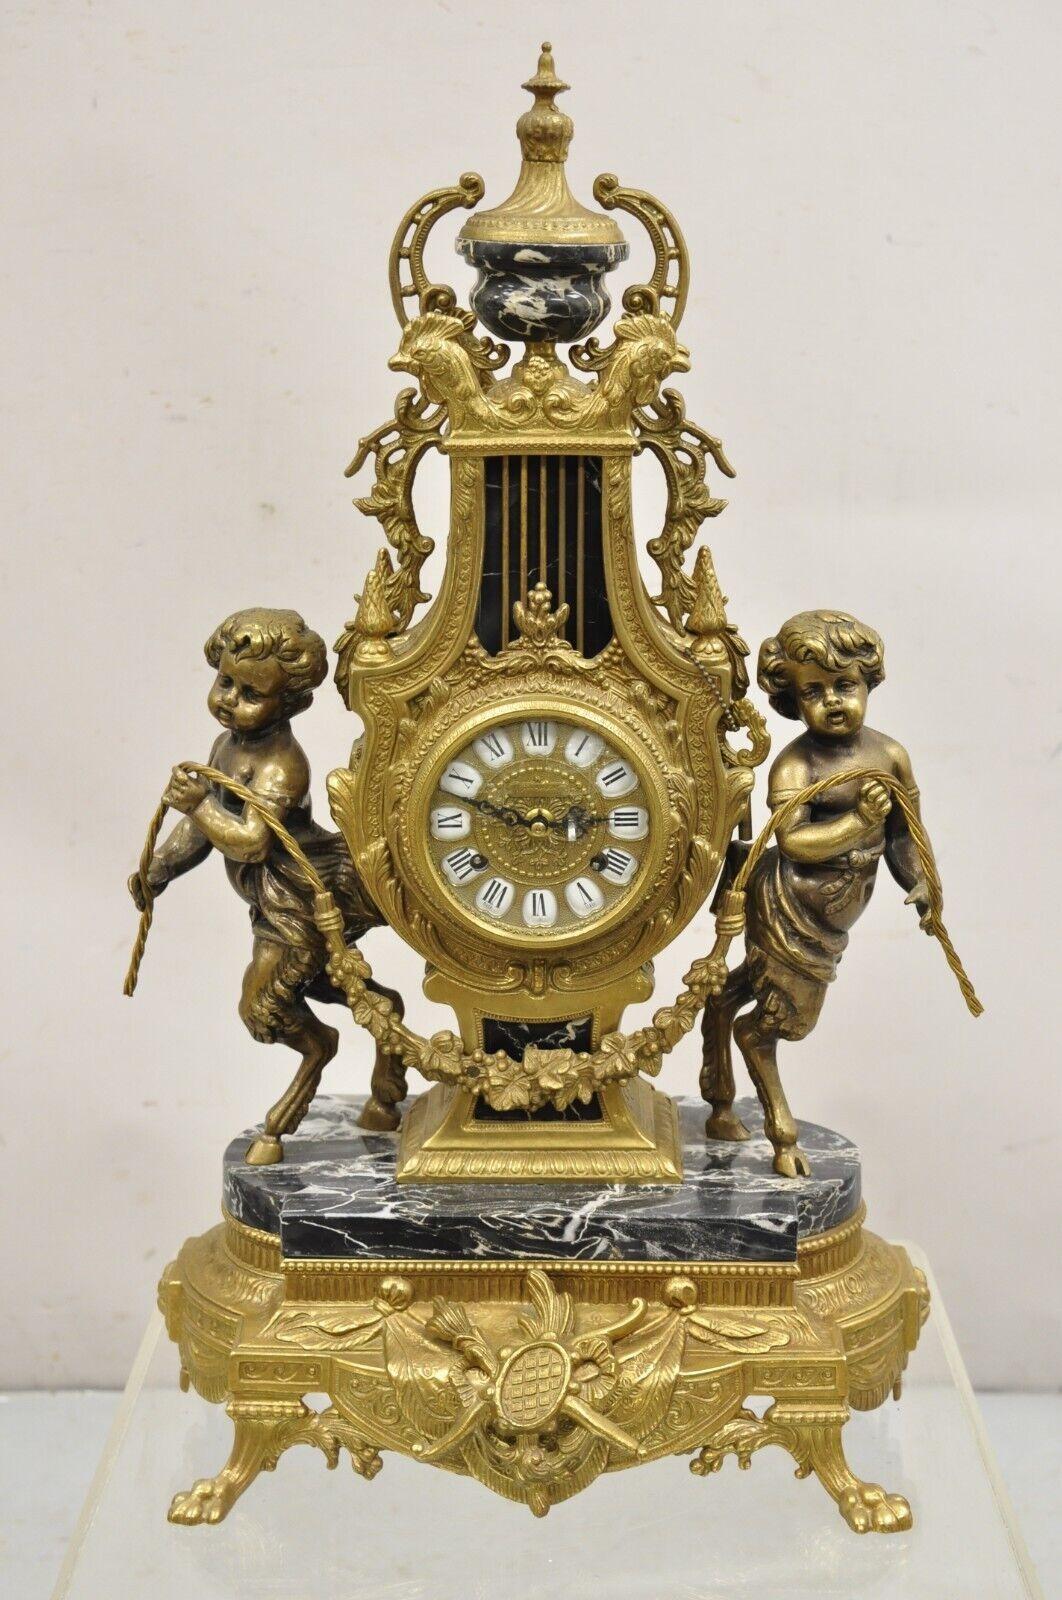 Vintage French Louis XV Style Brevetatto Italy Brass & Marble Figural Clock Set - 3 Pc Set. L'objet comprend une horloge figurative ornée de chérubins à sabots et d'accents de marbre noir, 2 candélabres ornés de 7 chandeliers et de têtes de